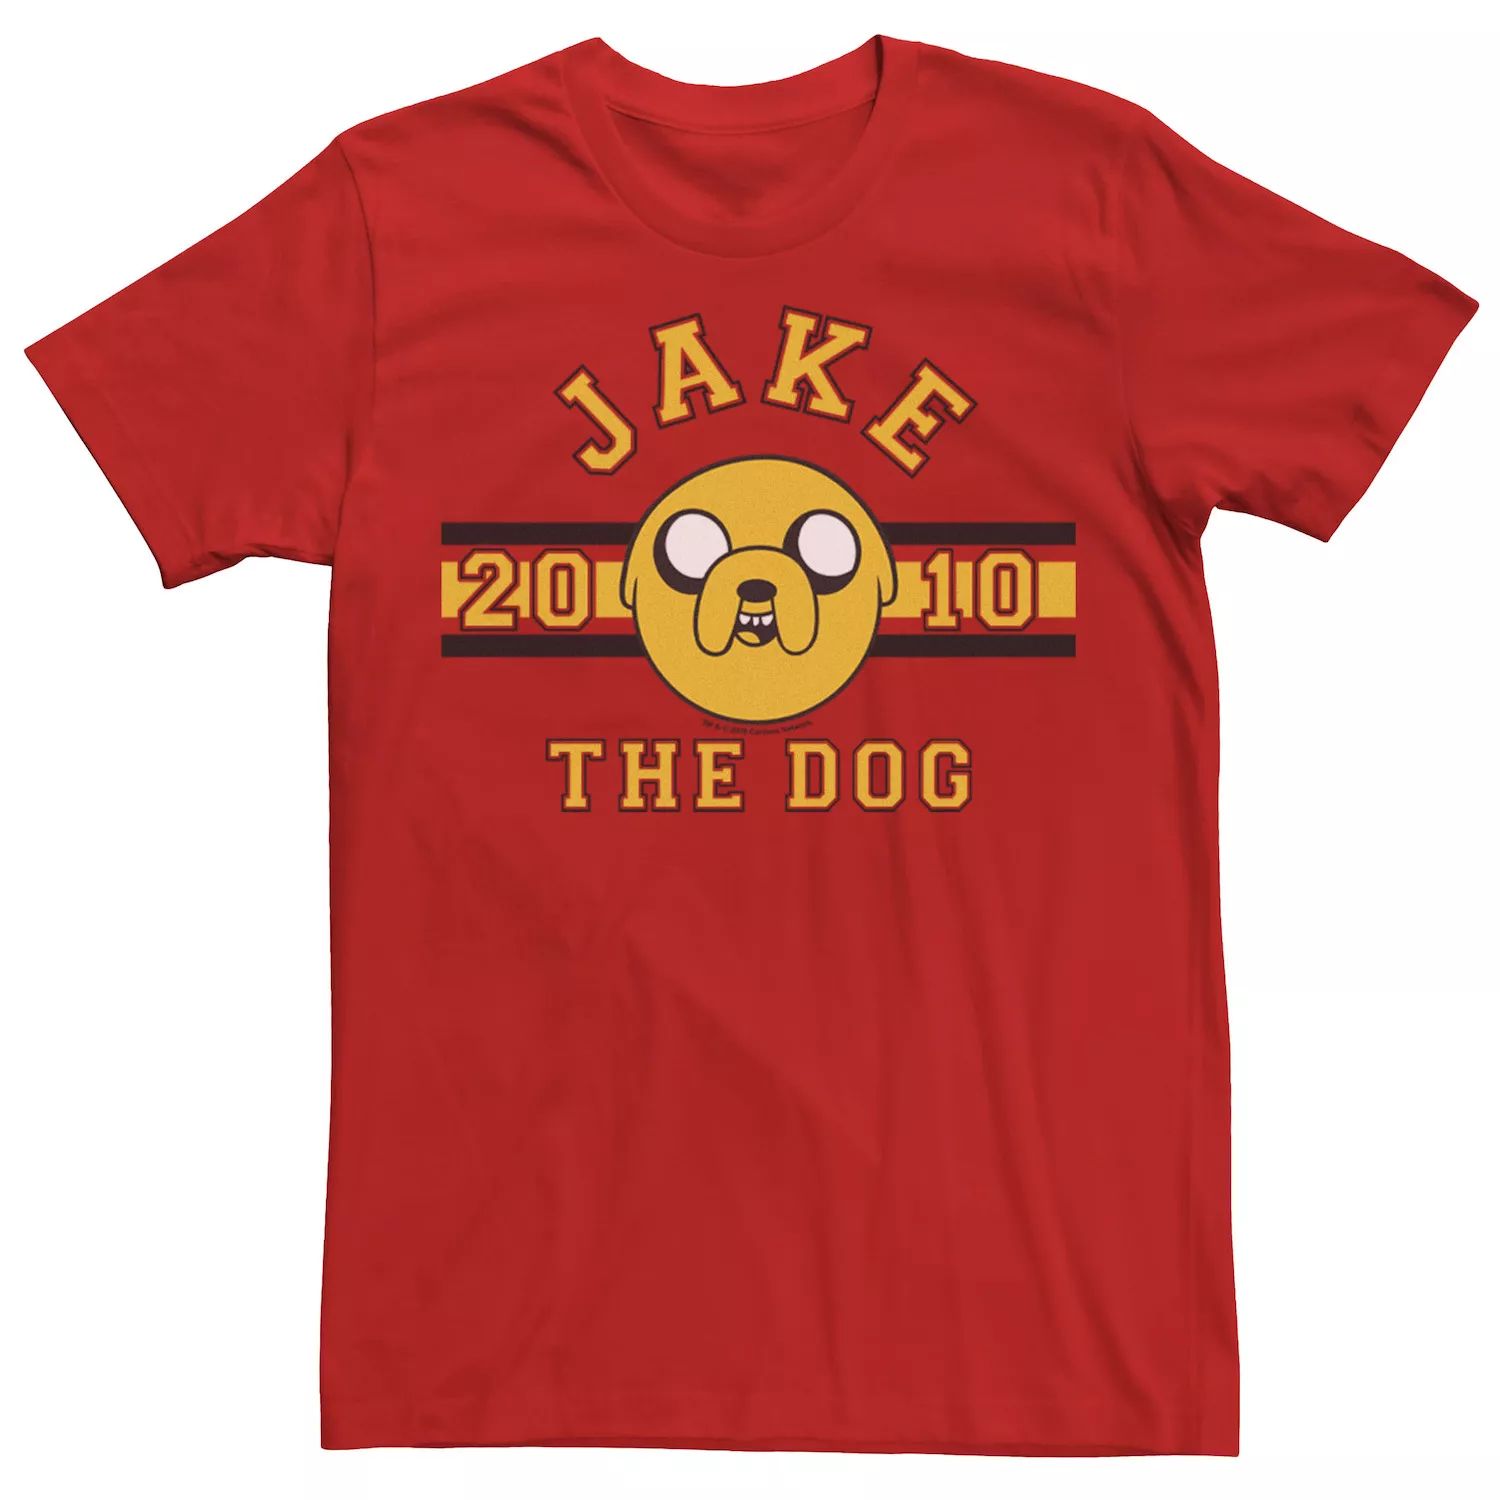 Мужская футболка с рисунком «Время приключений Джейк Пес 2010» Licensed Character, красный мужская футболка пес бульдог l красный